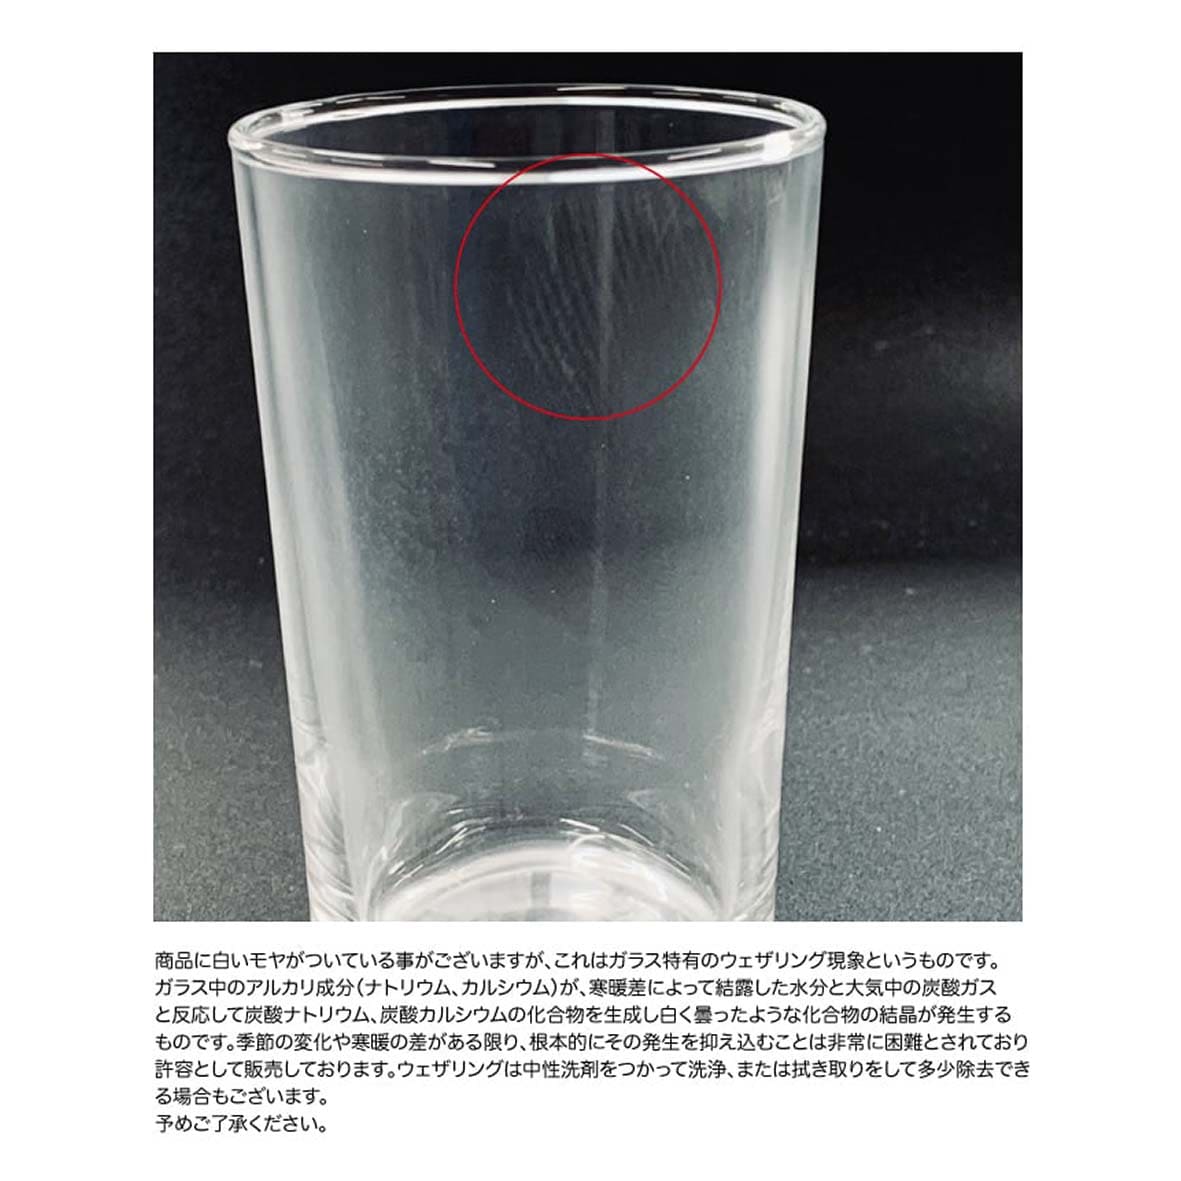 フロートグラス (235 ml) (品番B-6234)